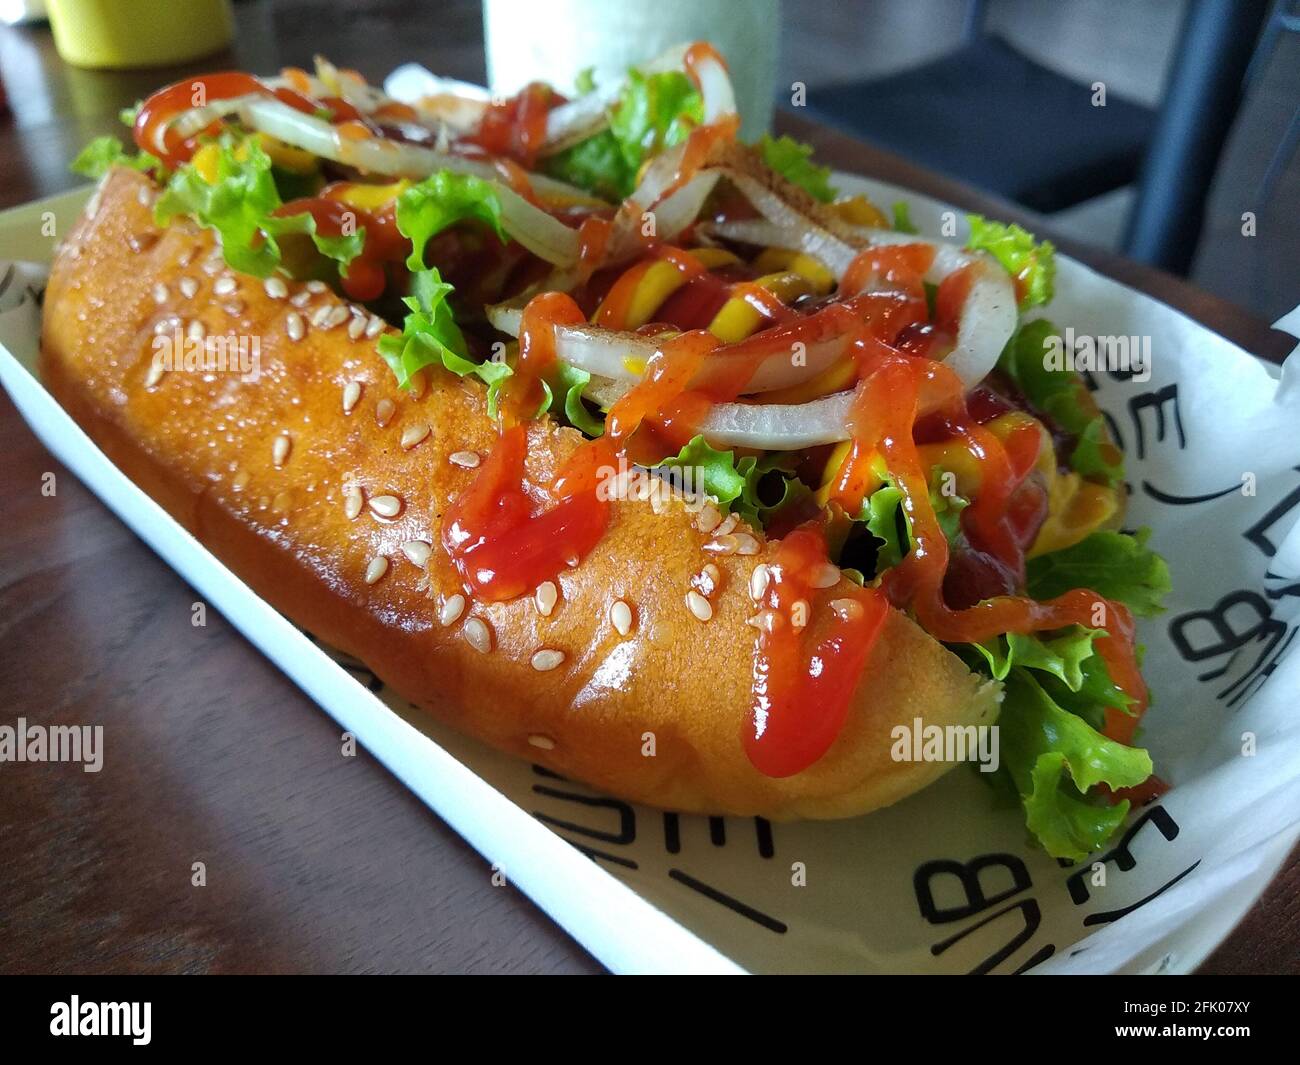 DENPASAR, INDONÉSIE - 12 févr. 2021 : grandes portions de hot dogs dans un café de Denpasar, 12 février 2021 Banque D'Images